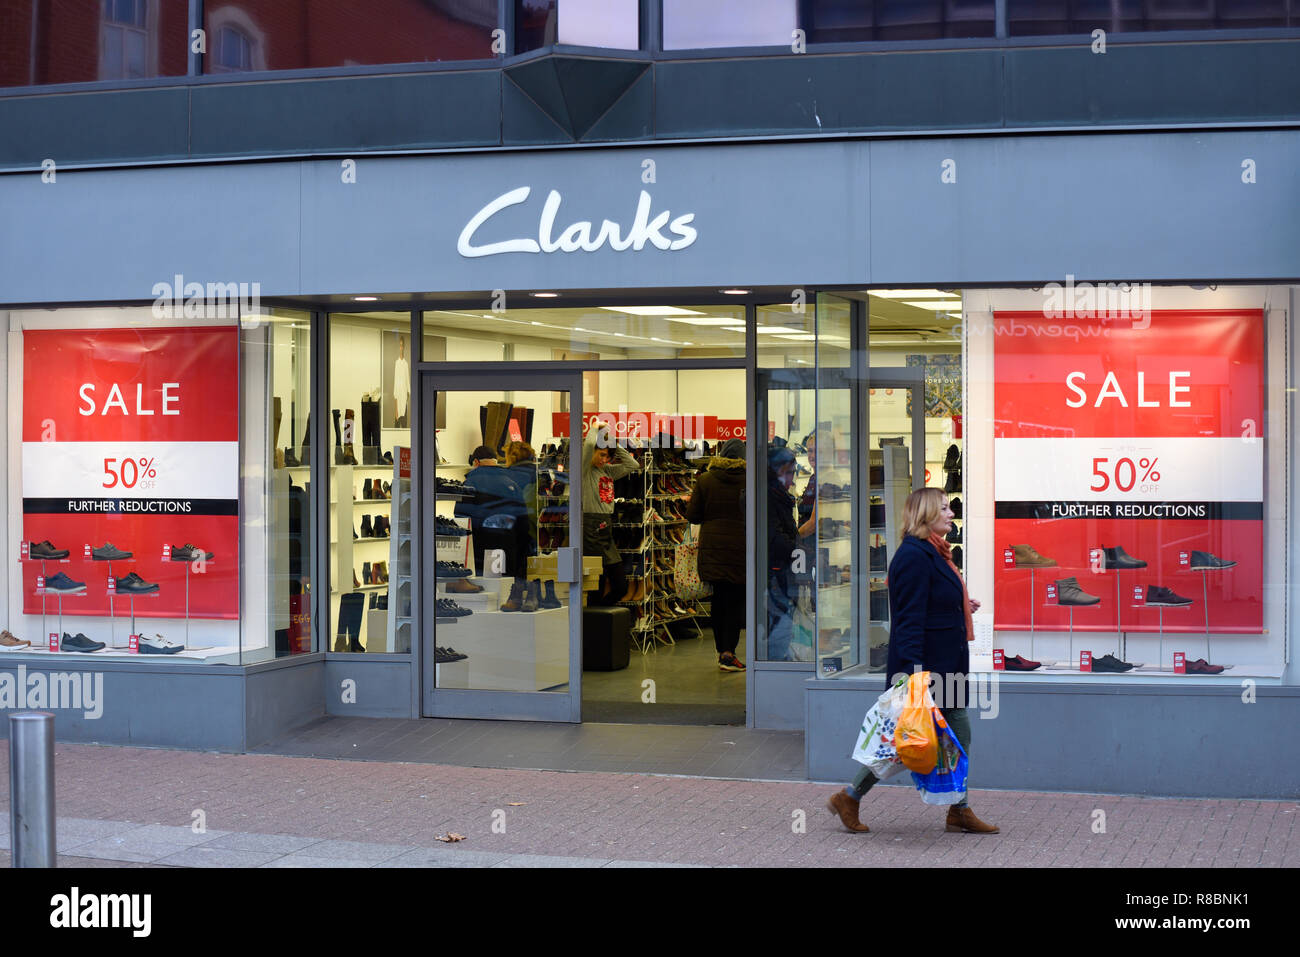 Tienda de Zapatos Clarks tienda en High Street, Southend on Sea, Essex, Reino Unido, con carteles de "Se vende" en ventana de la tienda. El 50% de la venta a mitad